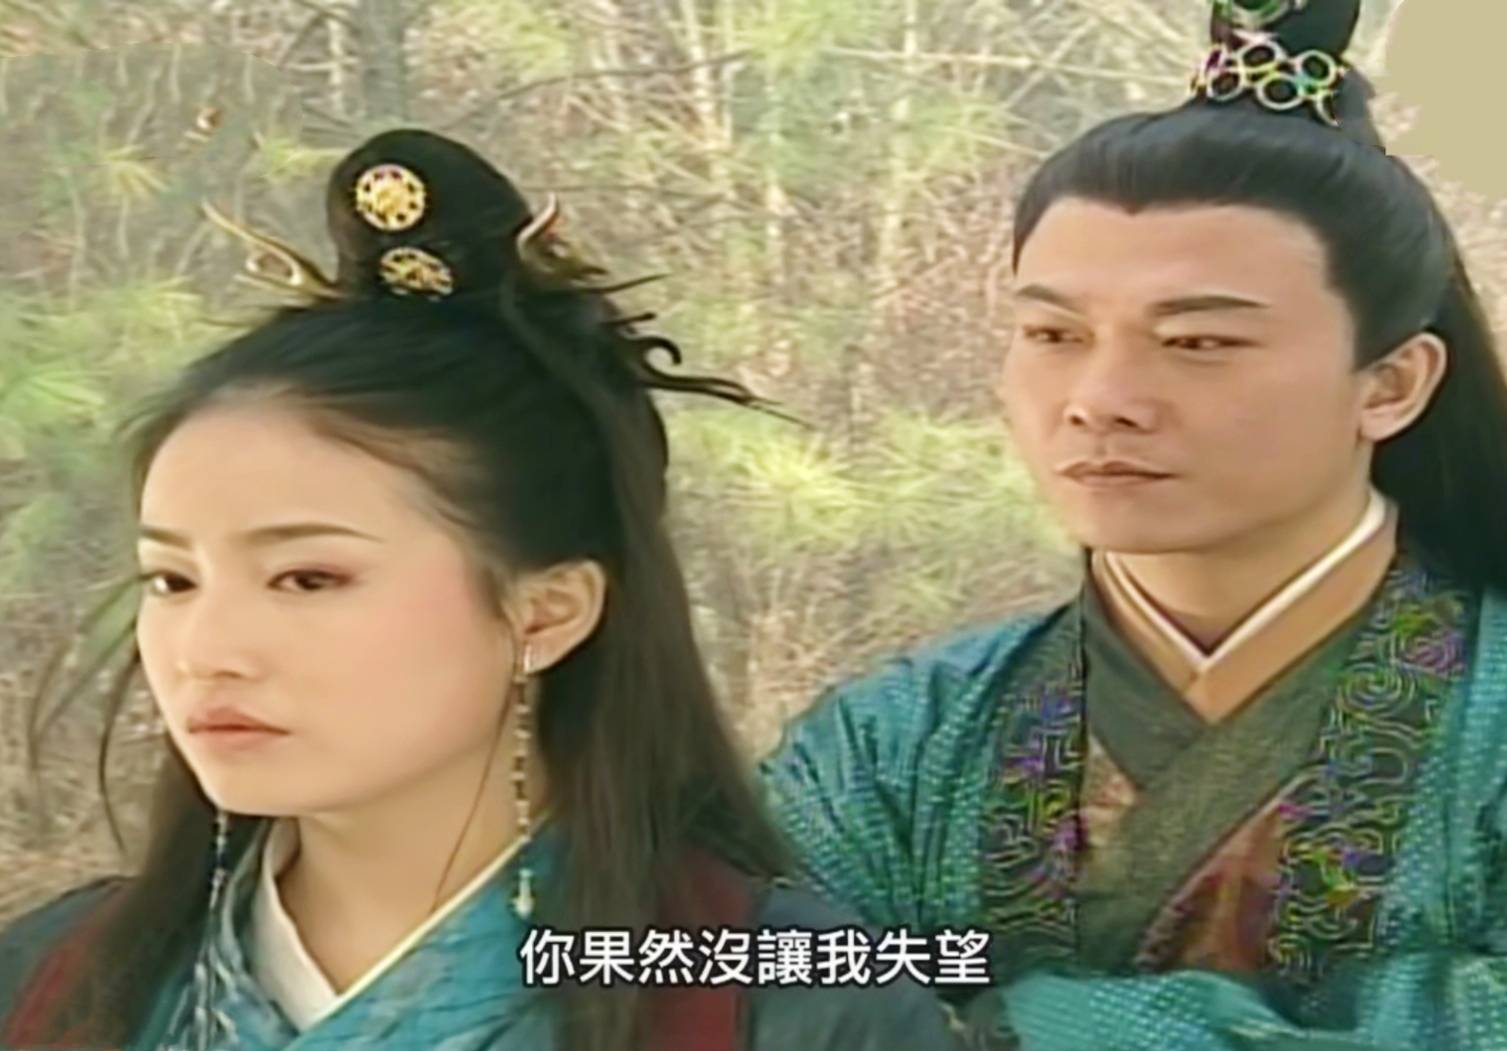 18年前的台湾古装剧,陈德容扮演美丽仙子,马景涛一人分饰两角